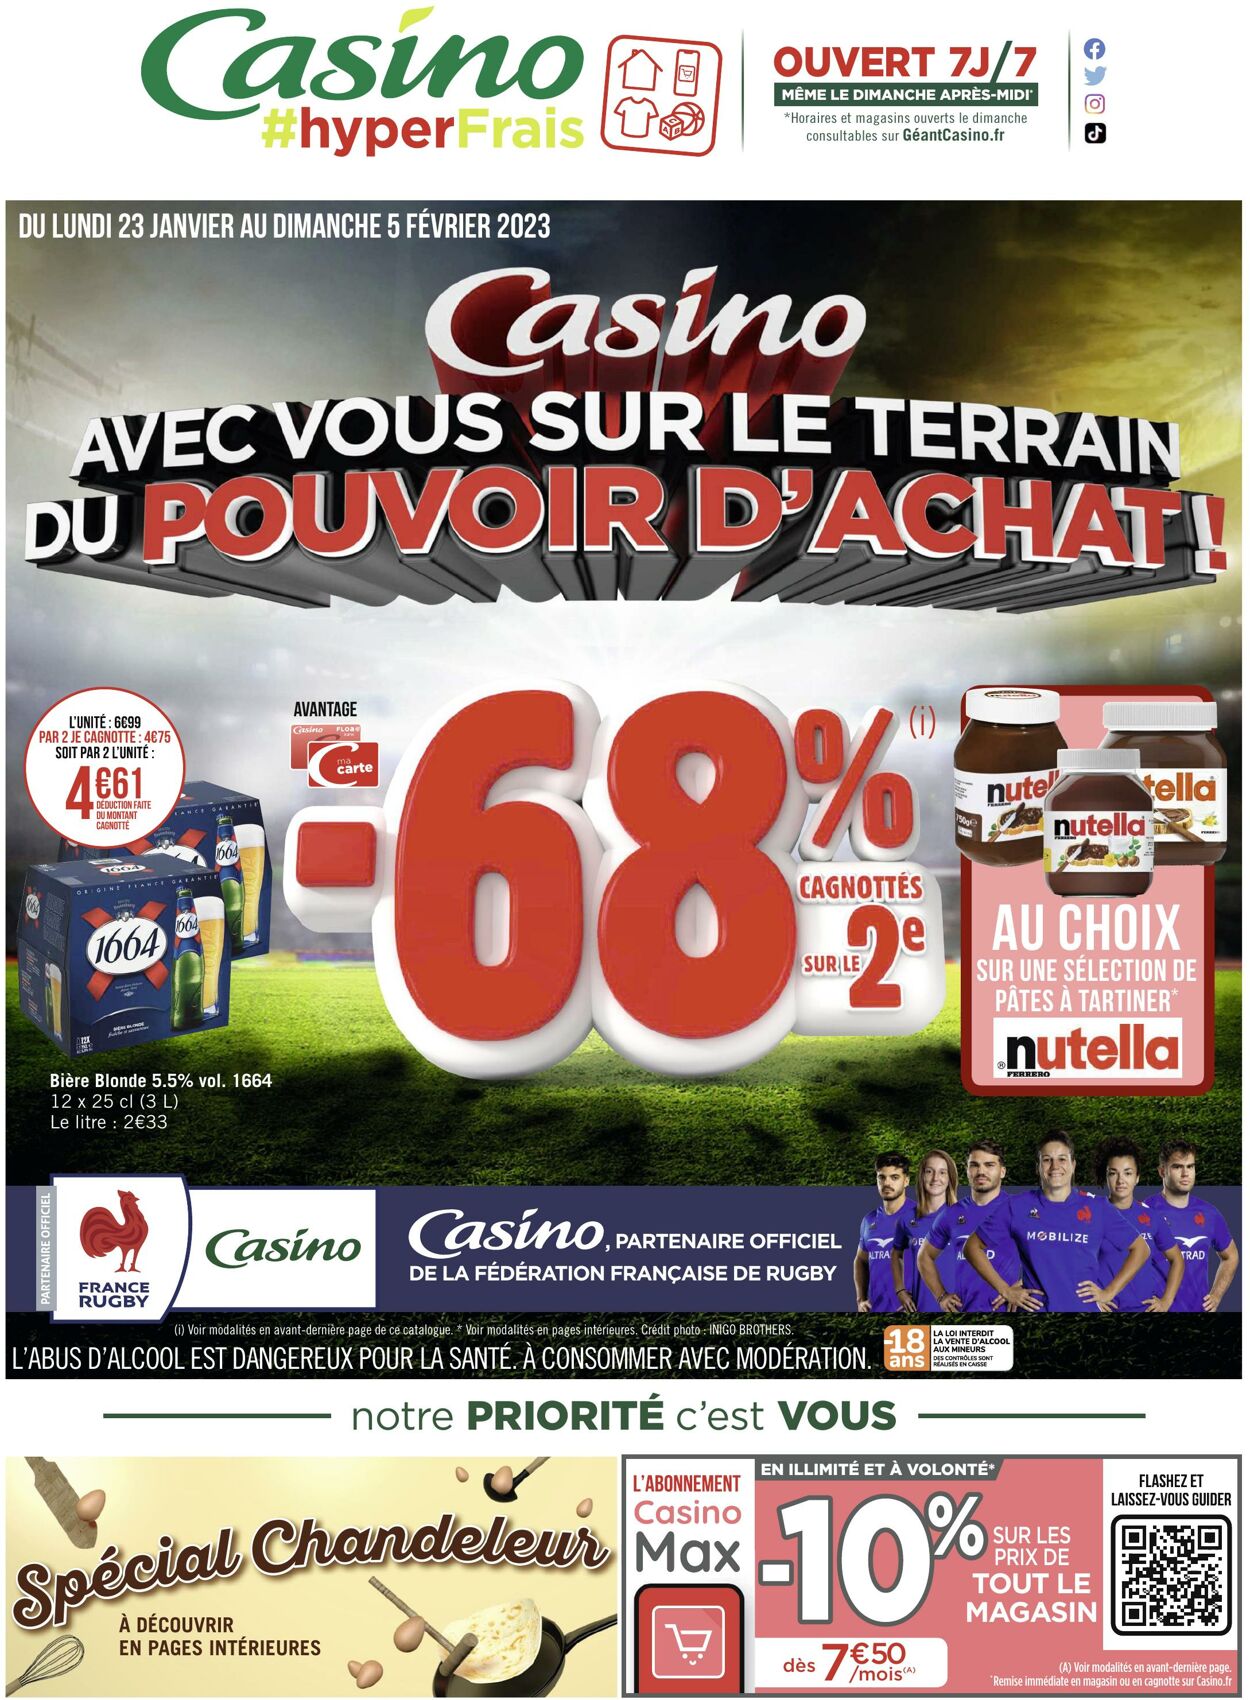 Catalogue Casino #hyper Frais 23.01.2023 - 05.02.2023